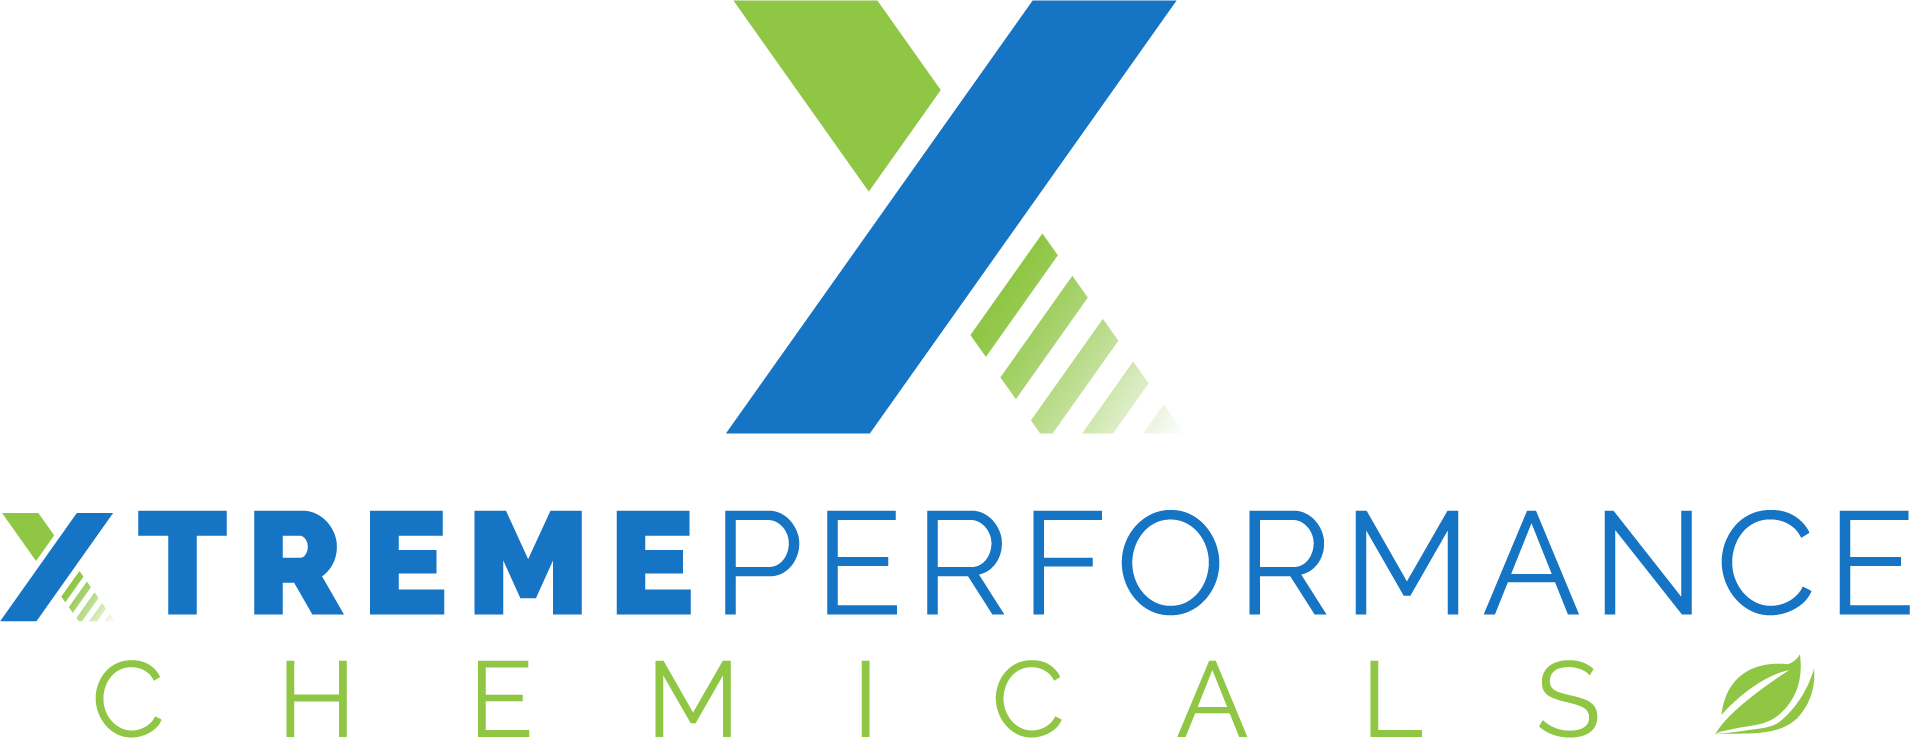 XtremePerformanceChemicals Main Logo